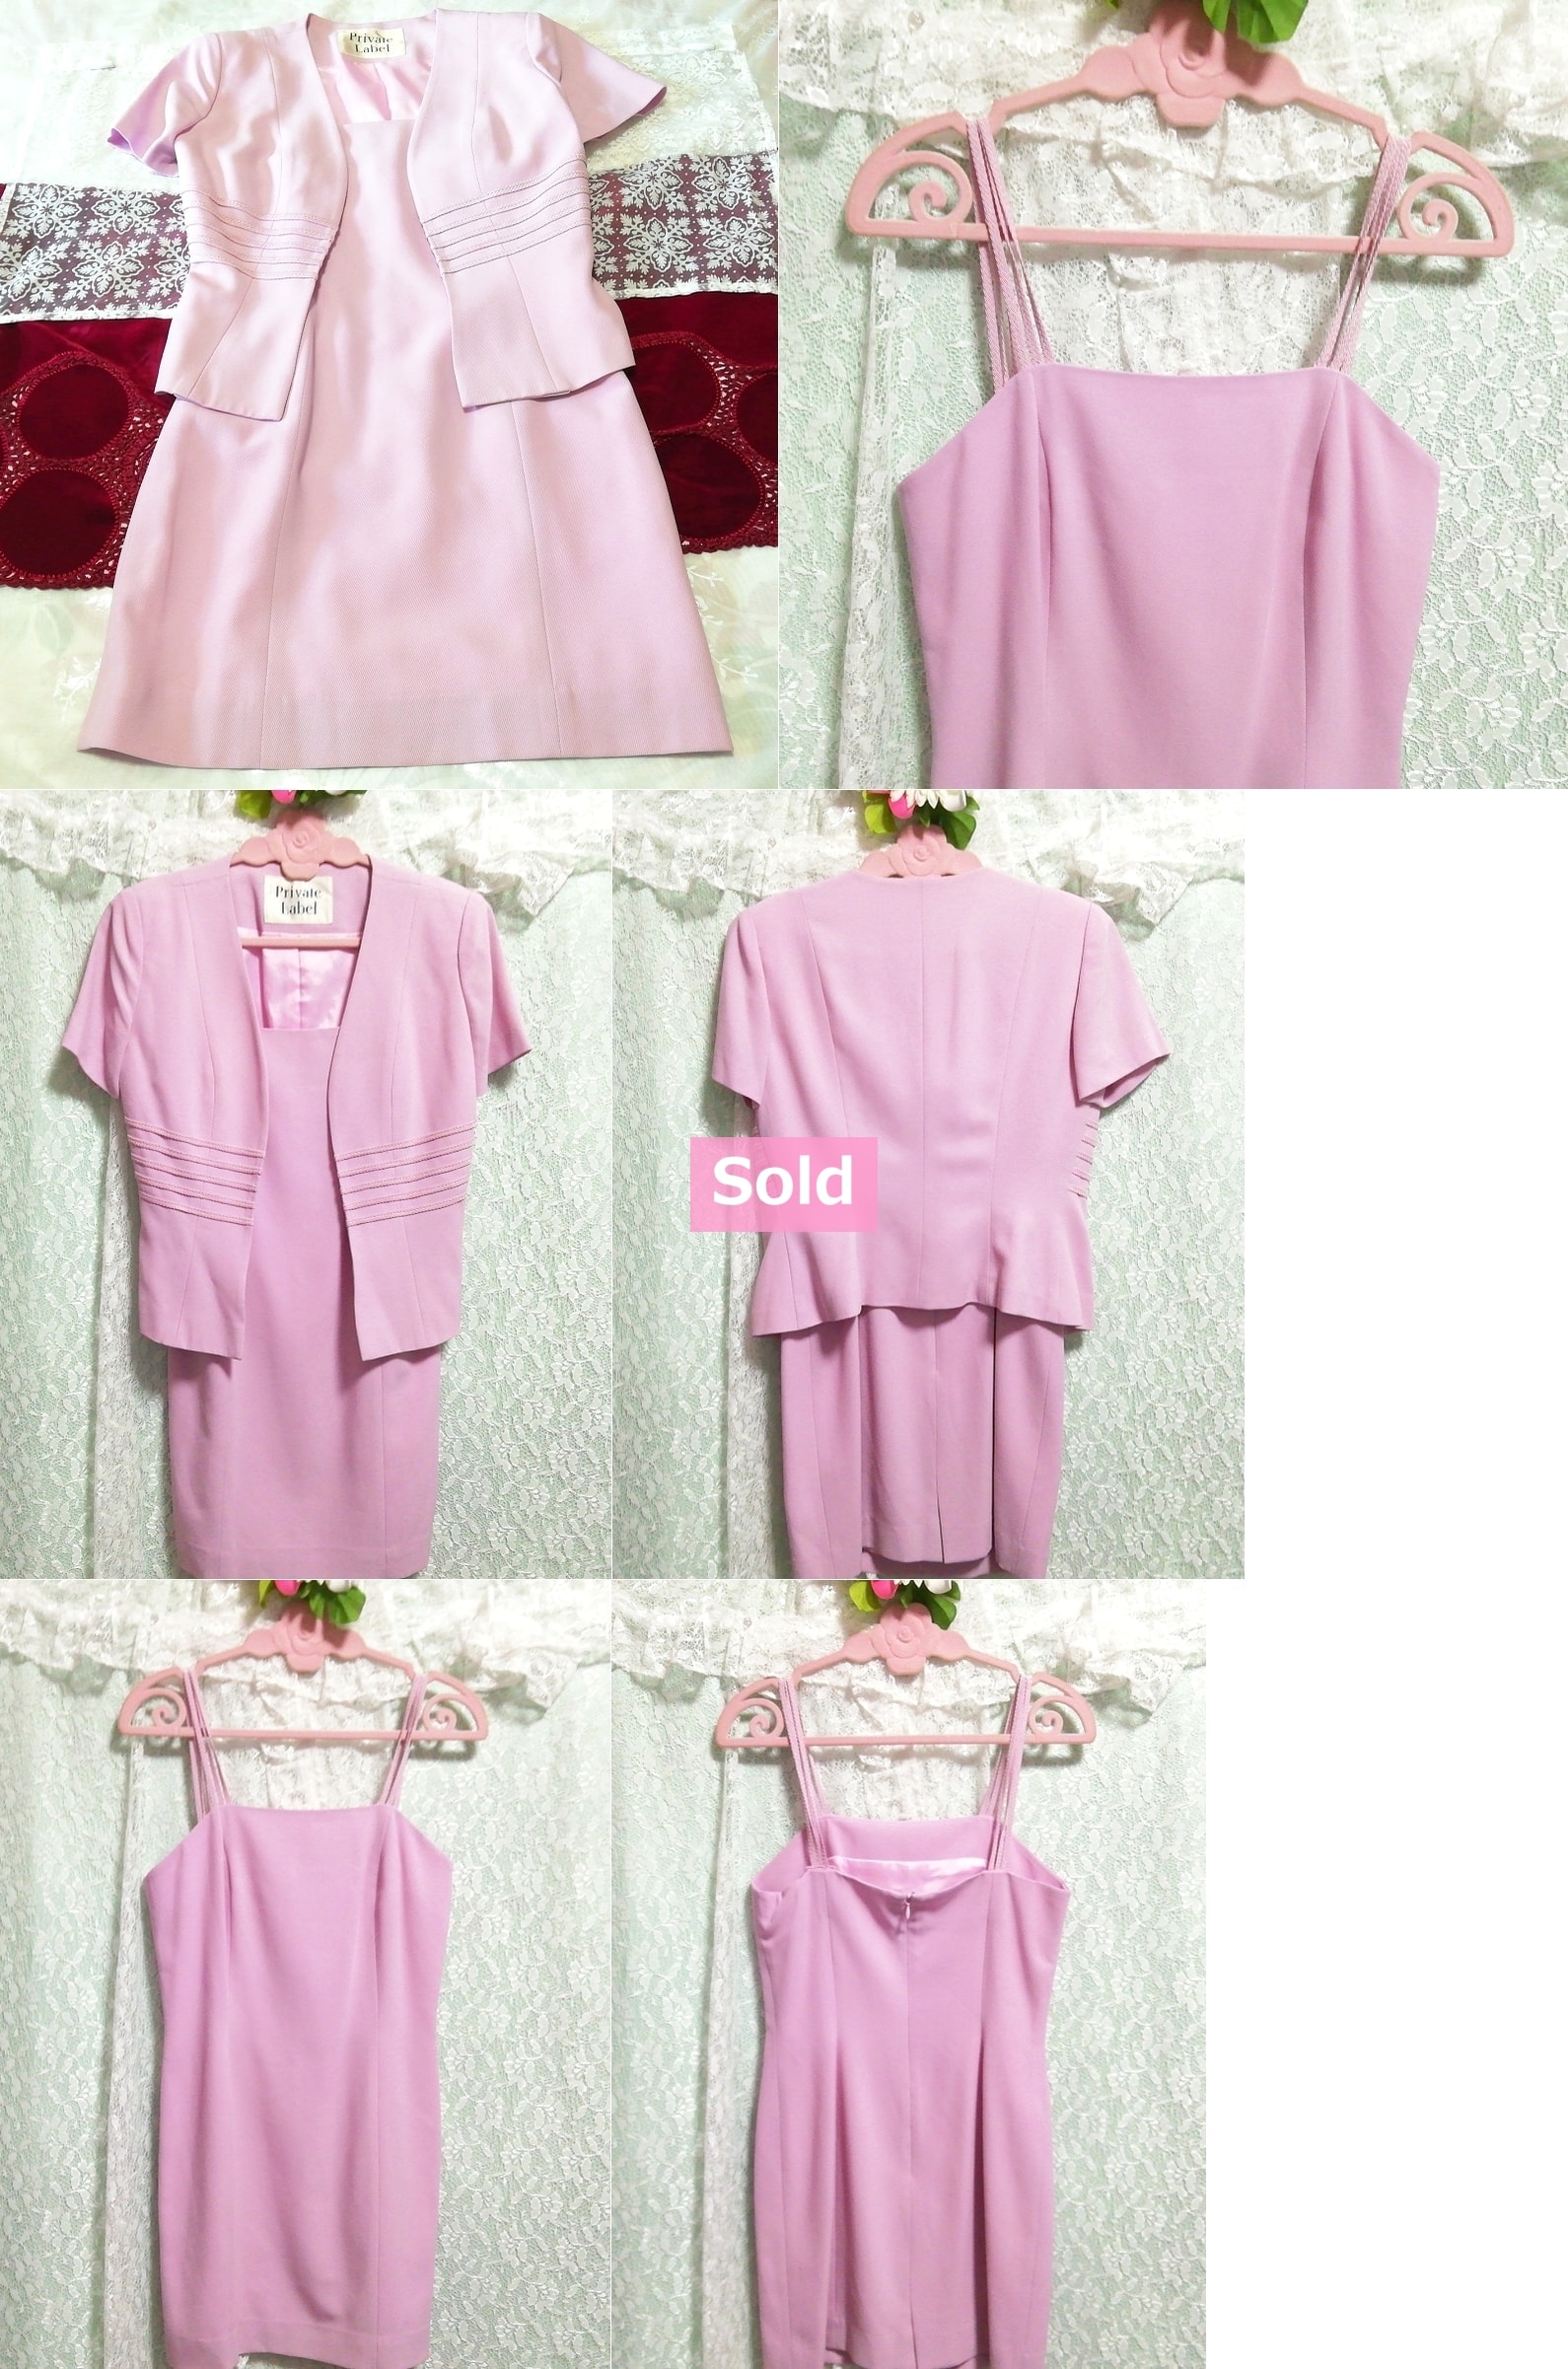 핑크색 슈트 2세트, 캐미솔 드레스, 가디건, made in japan, 숙녀 패션, 정장, 무릎길이 스커트